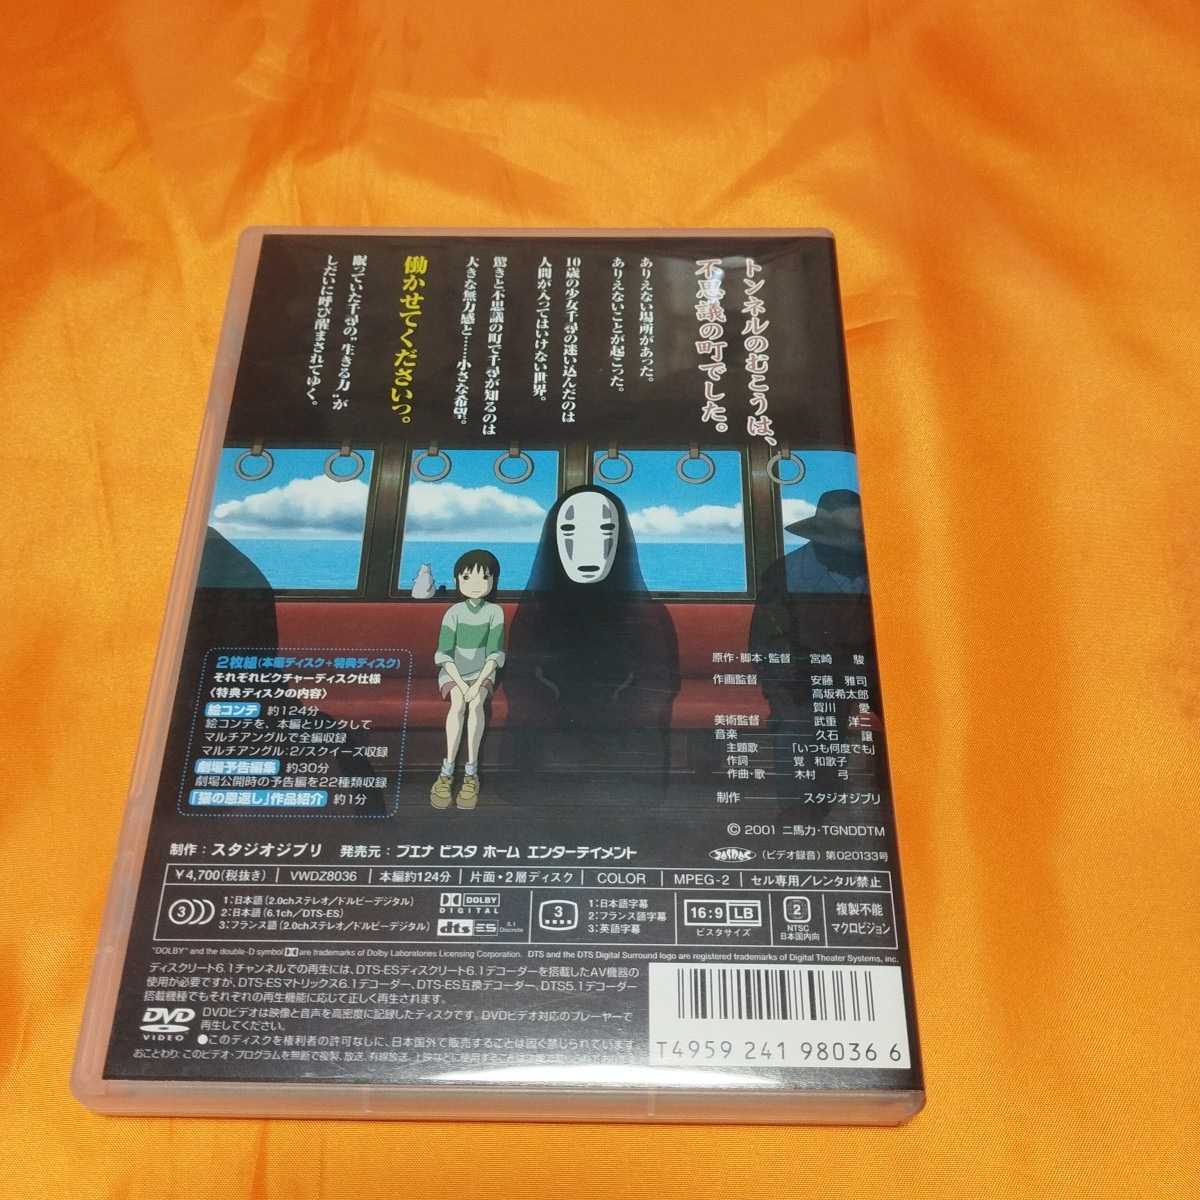 240510 DVD ジブリがいっぱい 千と千尋の神隠し DISC2枚組の画像2